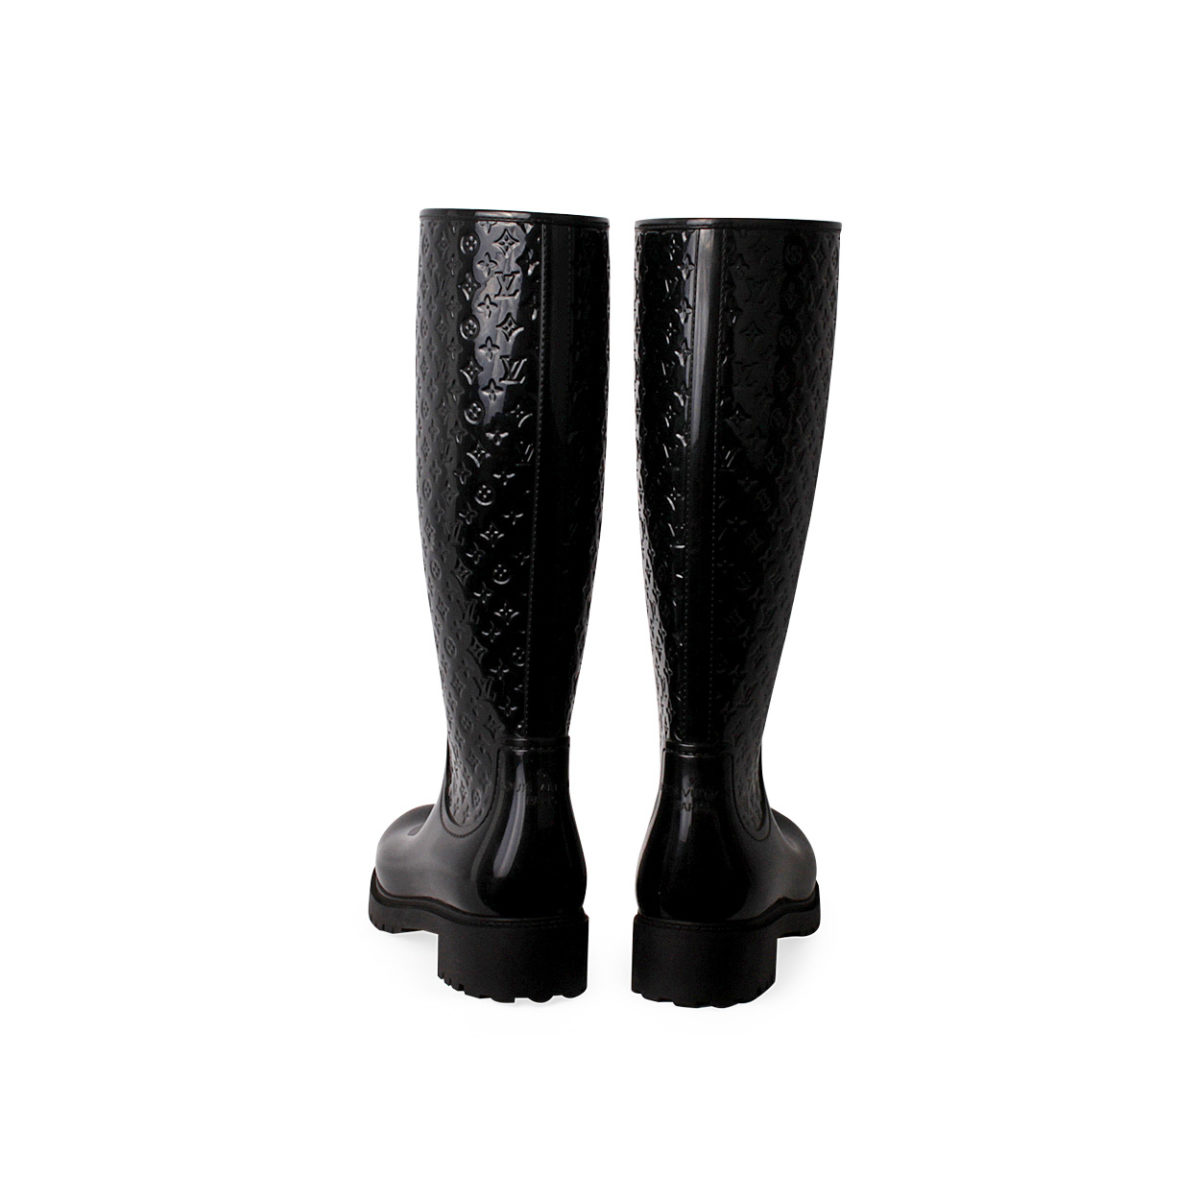 Louis Vuitton Monogram Rubber Splash Rain Boots Shoes Women 37 Black No Box